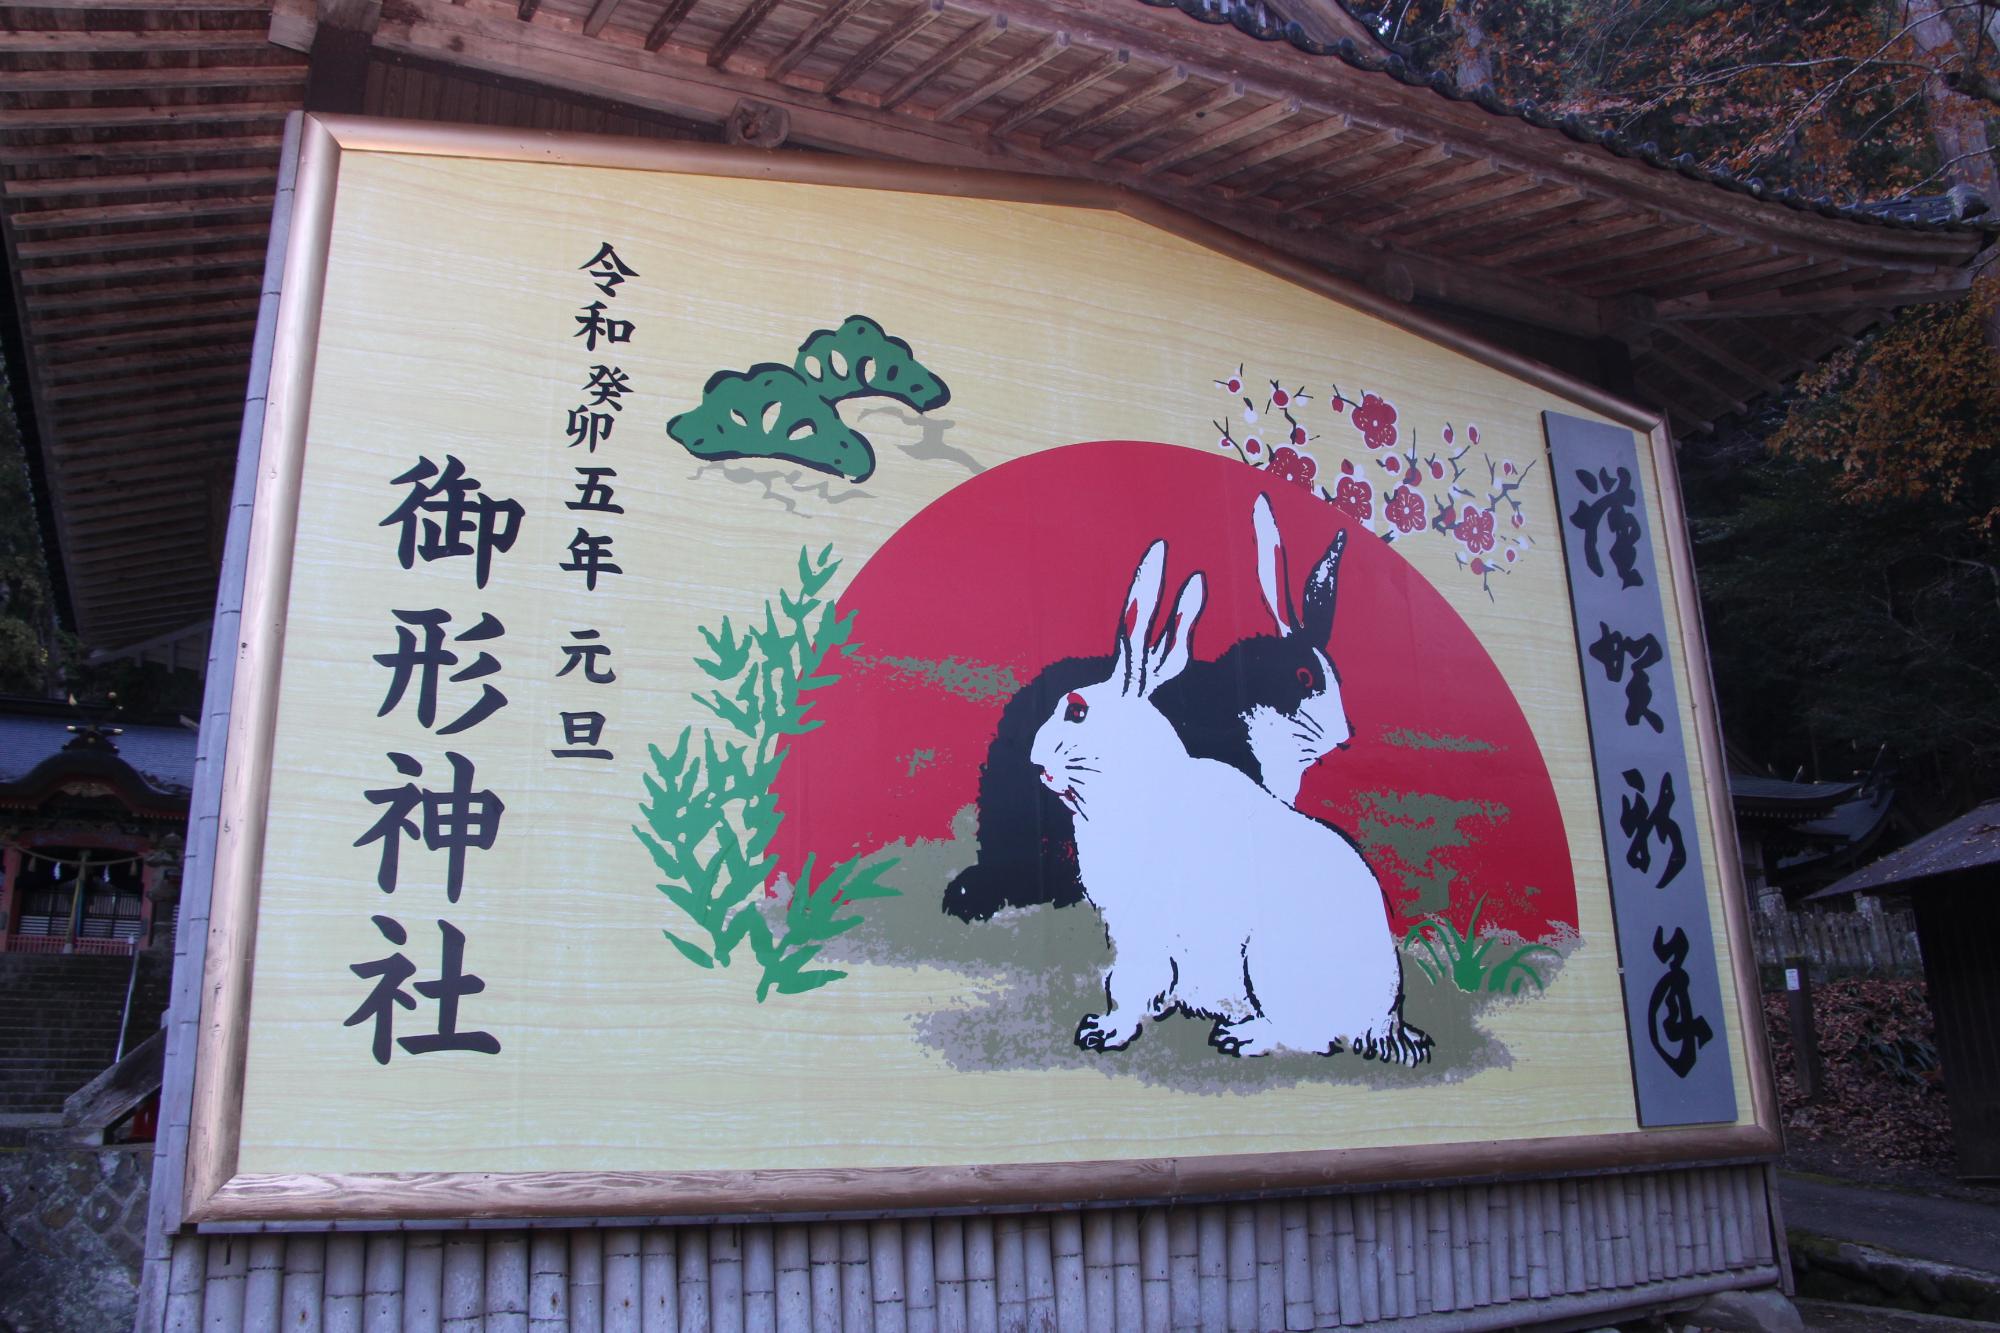 令和5年元旦と書かれ、白と黒っぽい2匹のウサギが描かれた御形神社の巨大絵馬の写真